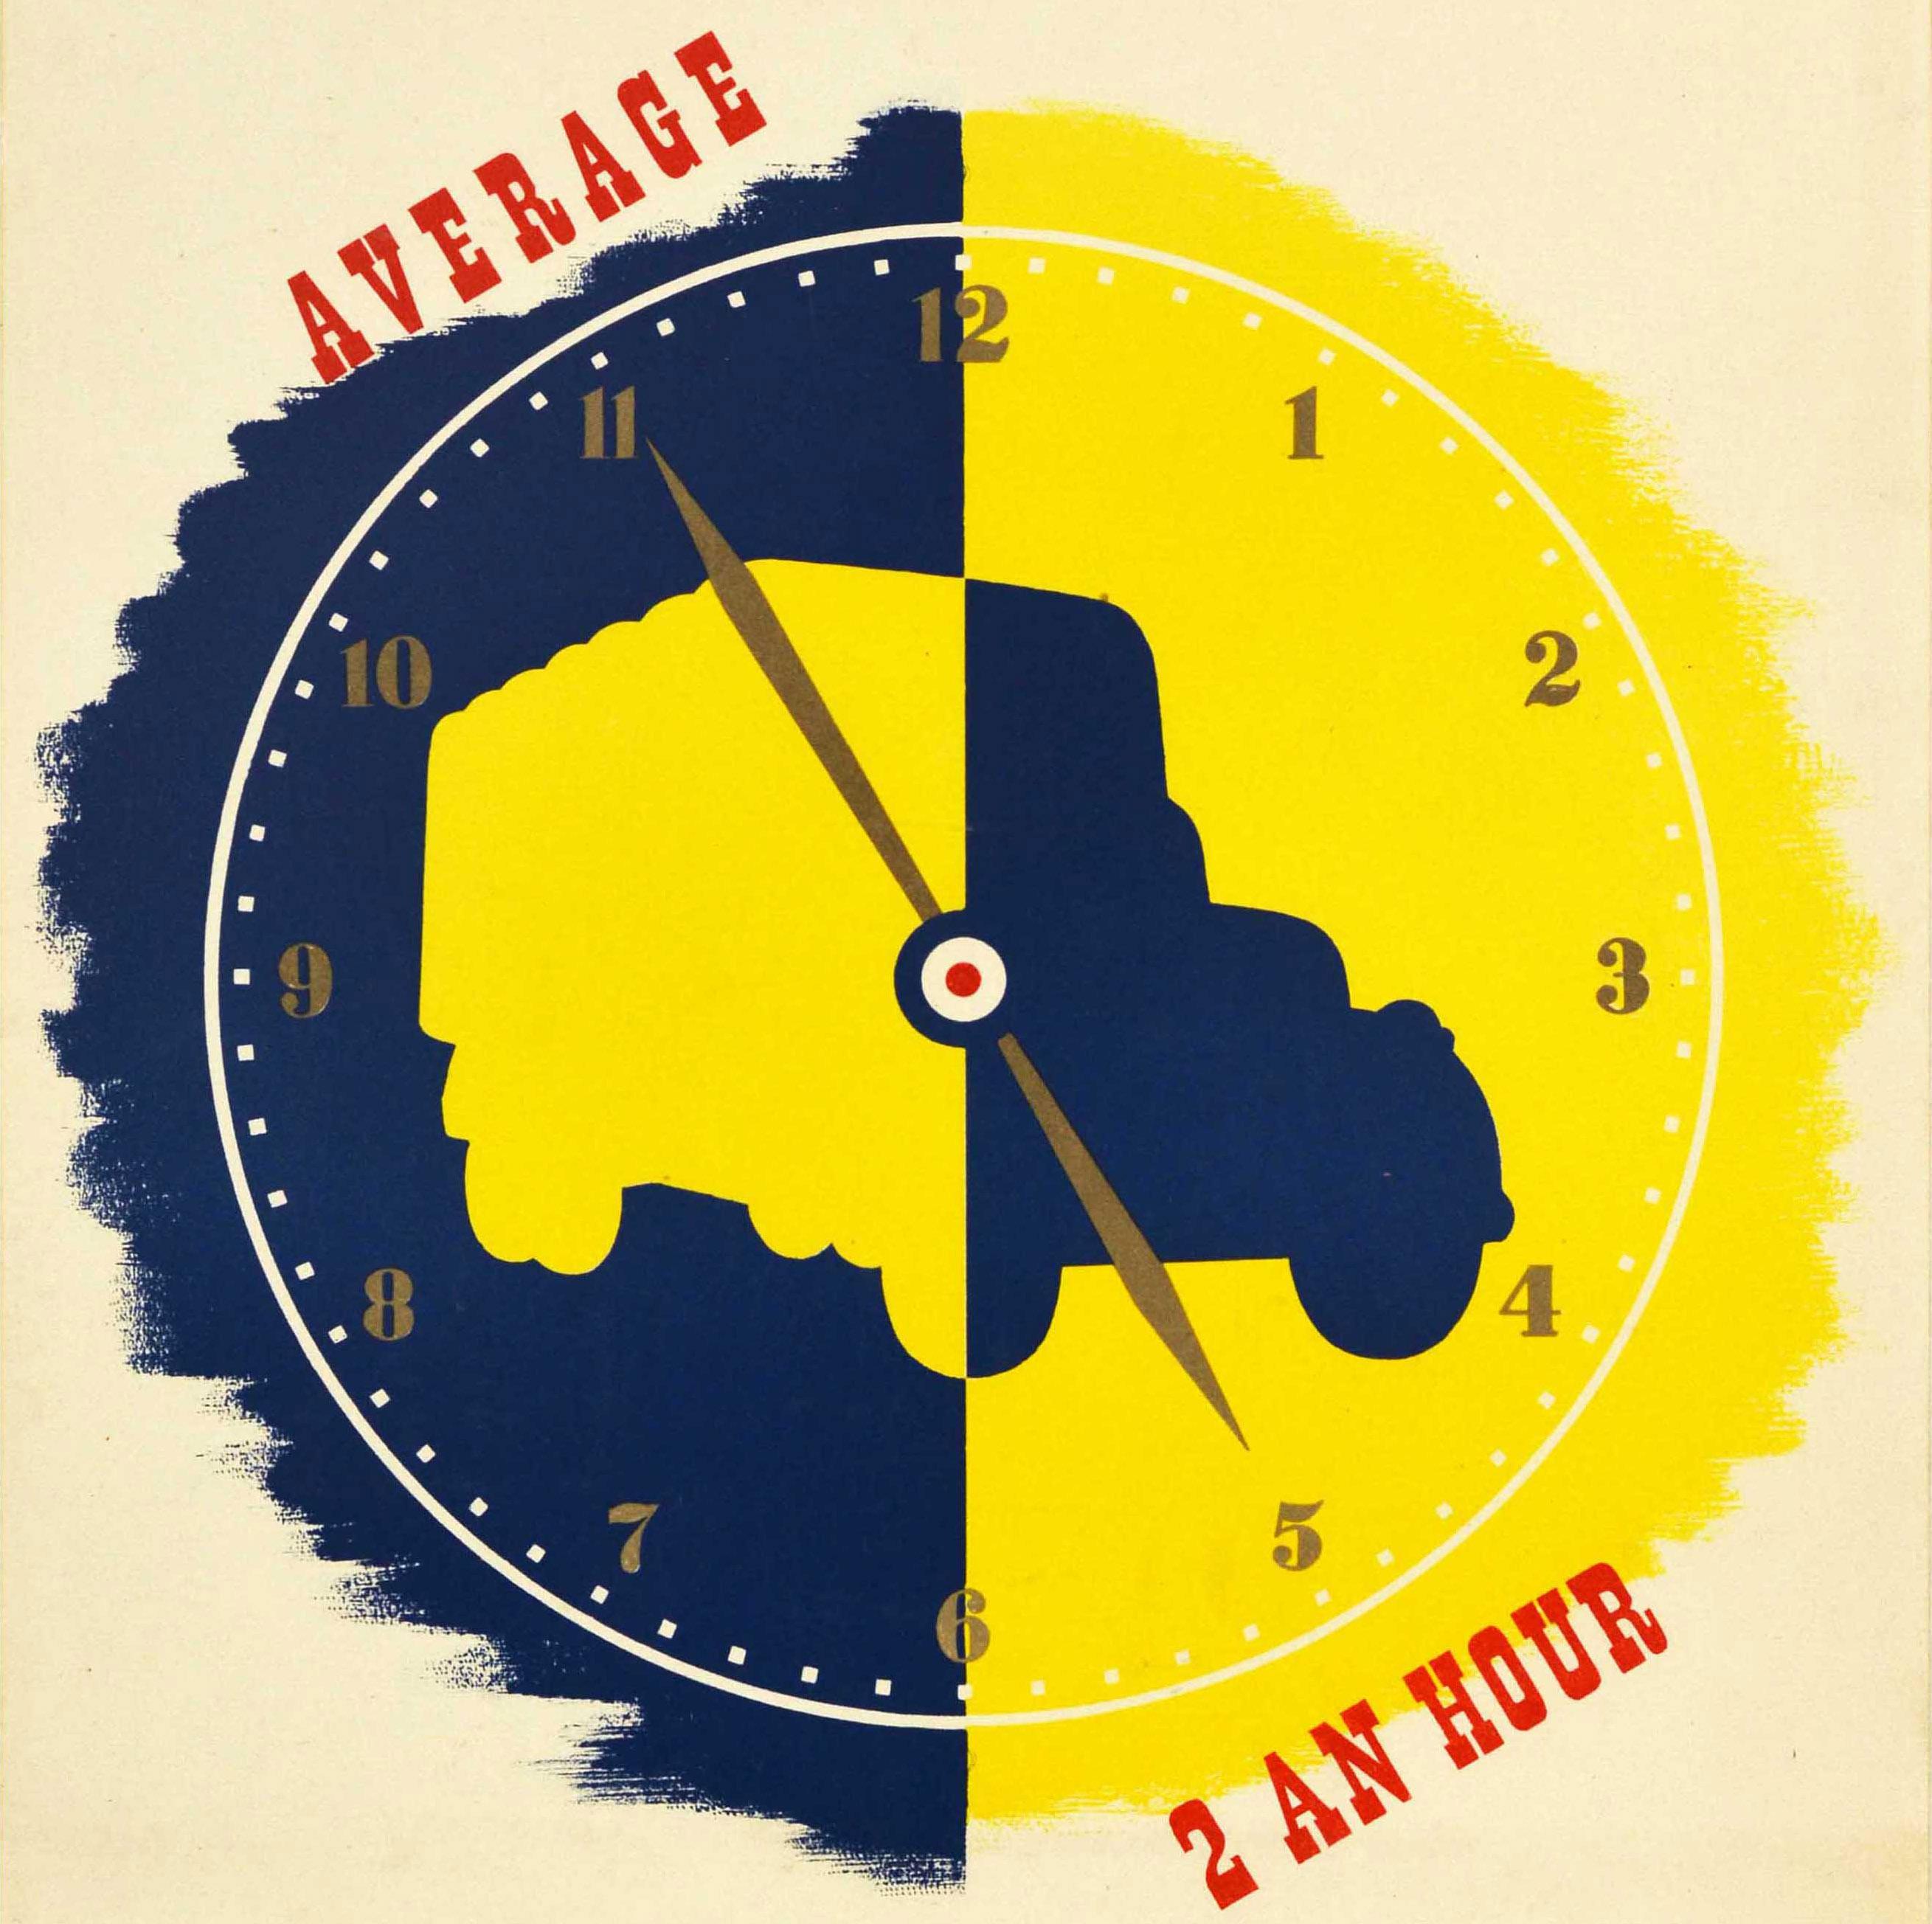 Affiche originale d'époque sur la sécurité routière - Les accidents de la route dans la Royal Air Force sont en moyenne de 2 par heure - C'est deux de trop ! - présentant un superbe graphisme représentant un cadran d'horloge sur un fond jaune et